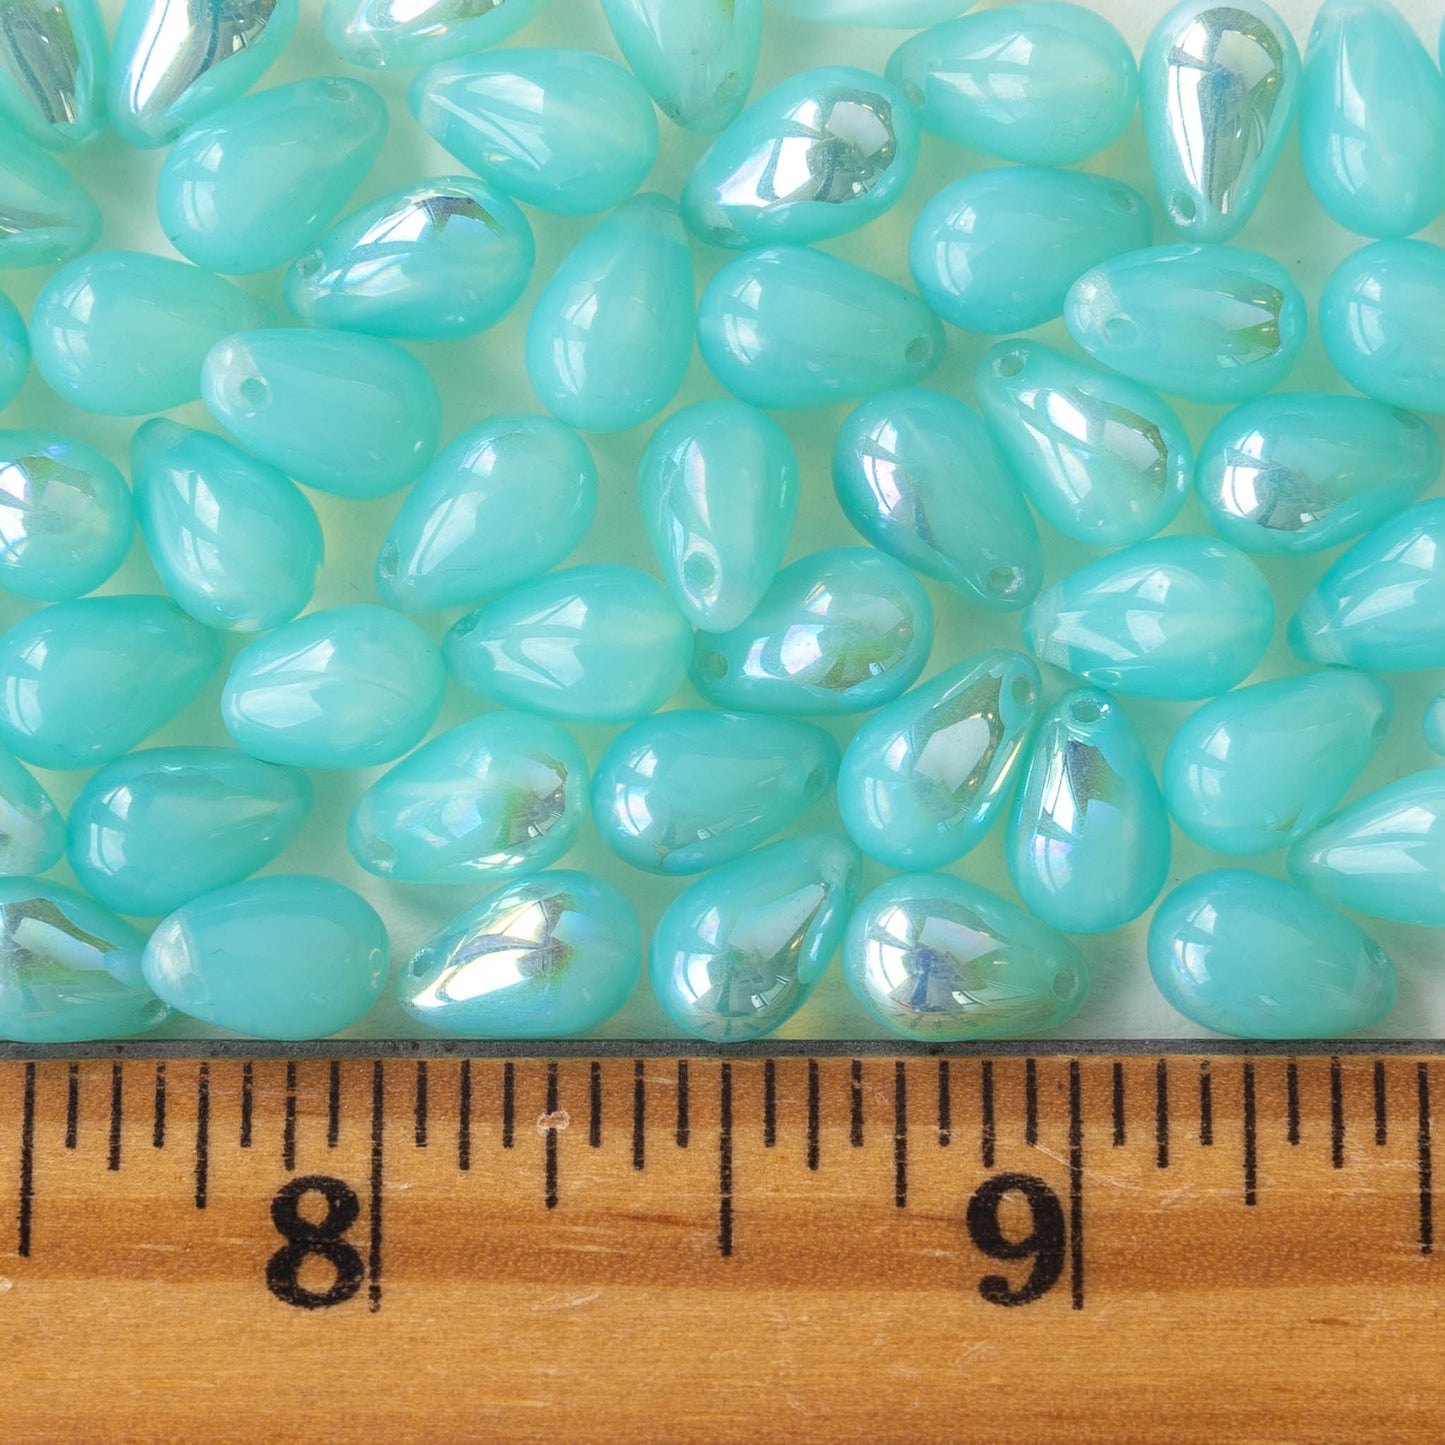 6x9mm Glass Teardrop Beads - Seafoam Opaline Luster - 50 Beads